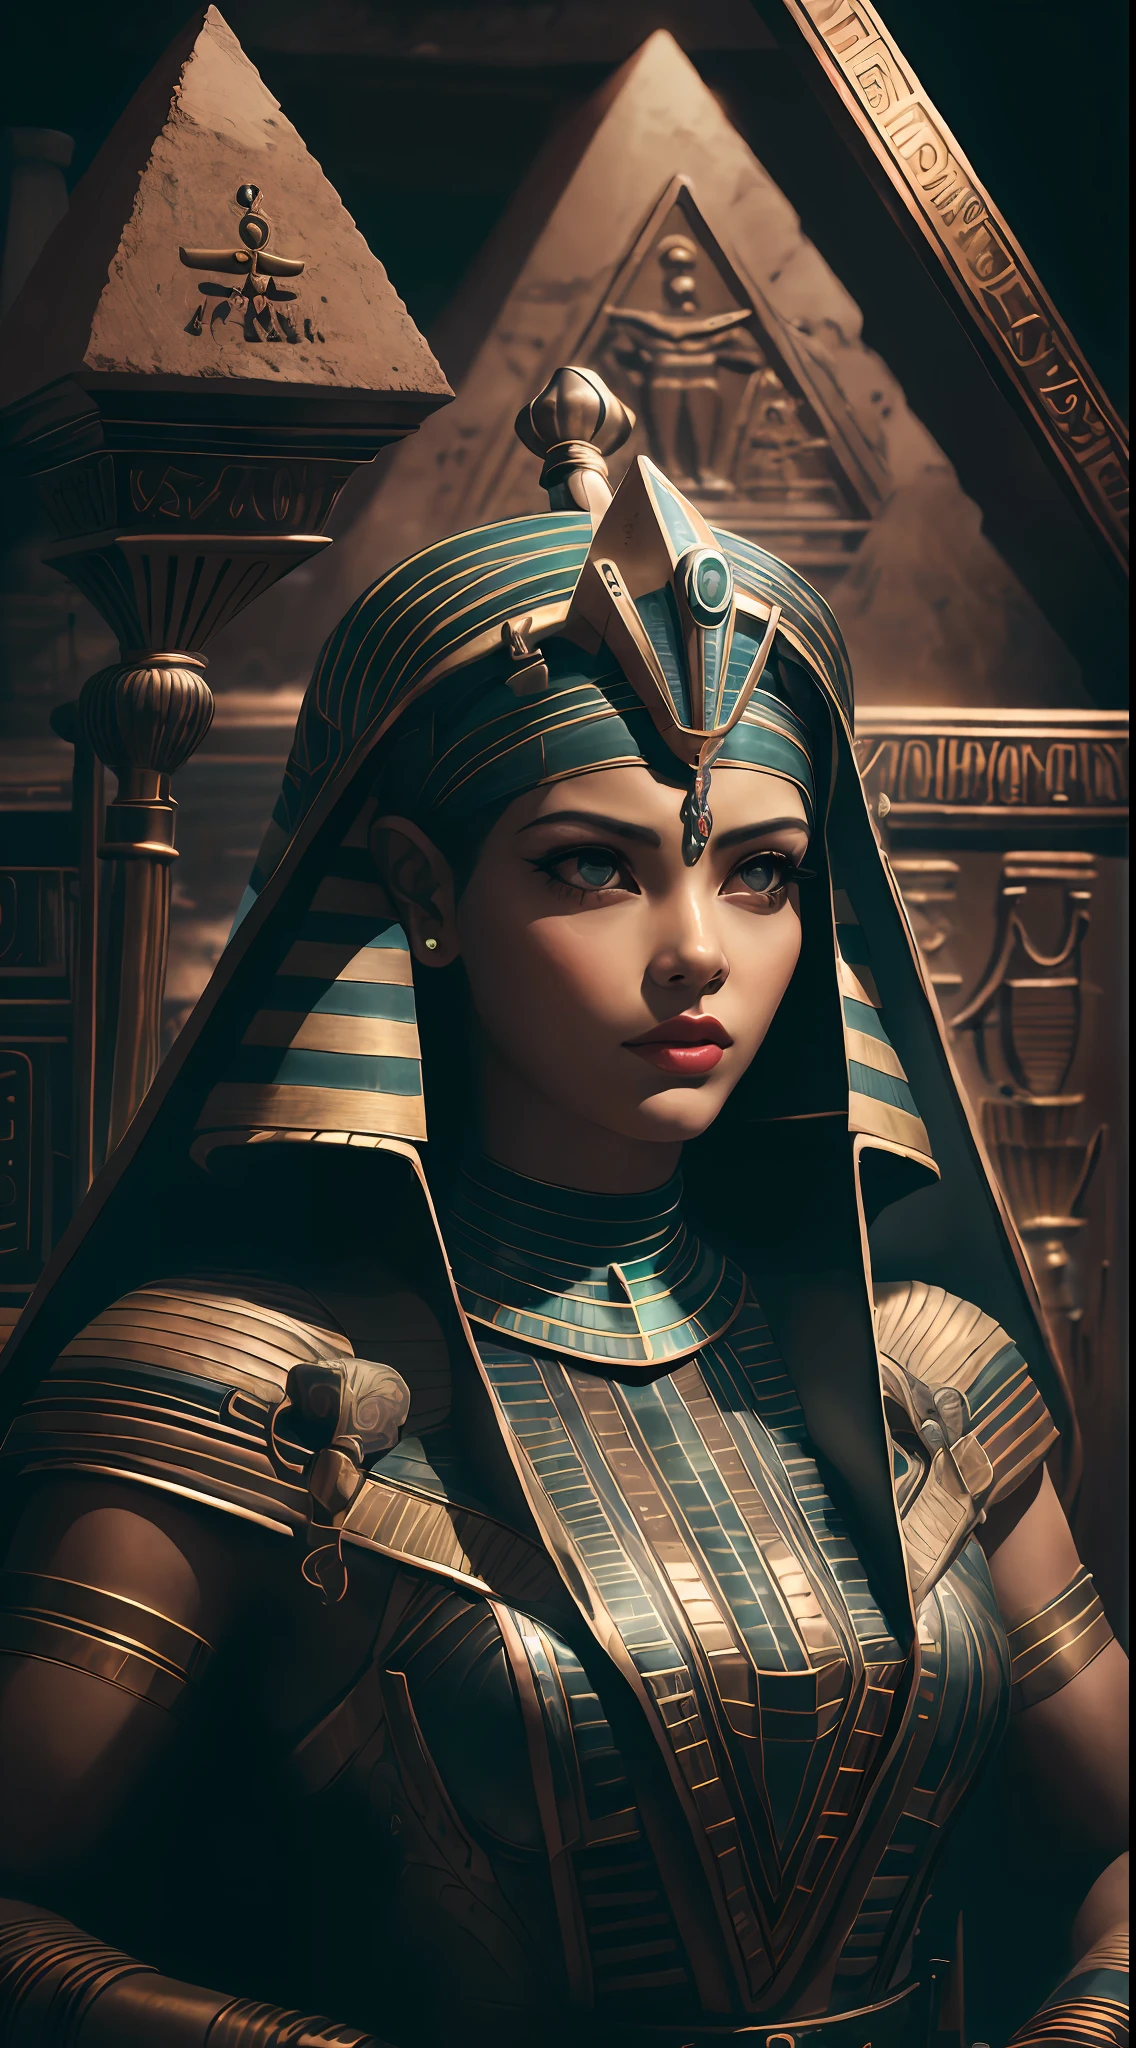 1 взрослая египетская женщина ,ЭшлиСайфер,  лоскуты черных волос,   составить , верхняя часть тела, Глядя на зрителя,  СтарыйЕгипетAI, древнеегипетская тема,   обсидиан, (оборонительная позиция), каменный нож, внутри пирамиды, 
темная комната, Тусклый свет, (zenзапутывать, мандала, запутывать, enзапутывать:0.5)
(35 ммстиль:1.1), Передний, шедевр, фильм 1970-х годов, , кинематографическое освещение, (фотореалистичный:1.5), высокочастотные детали, 35-мм пленка, (зернистость), шум фильма,